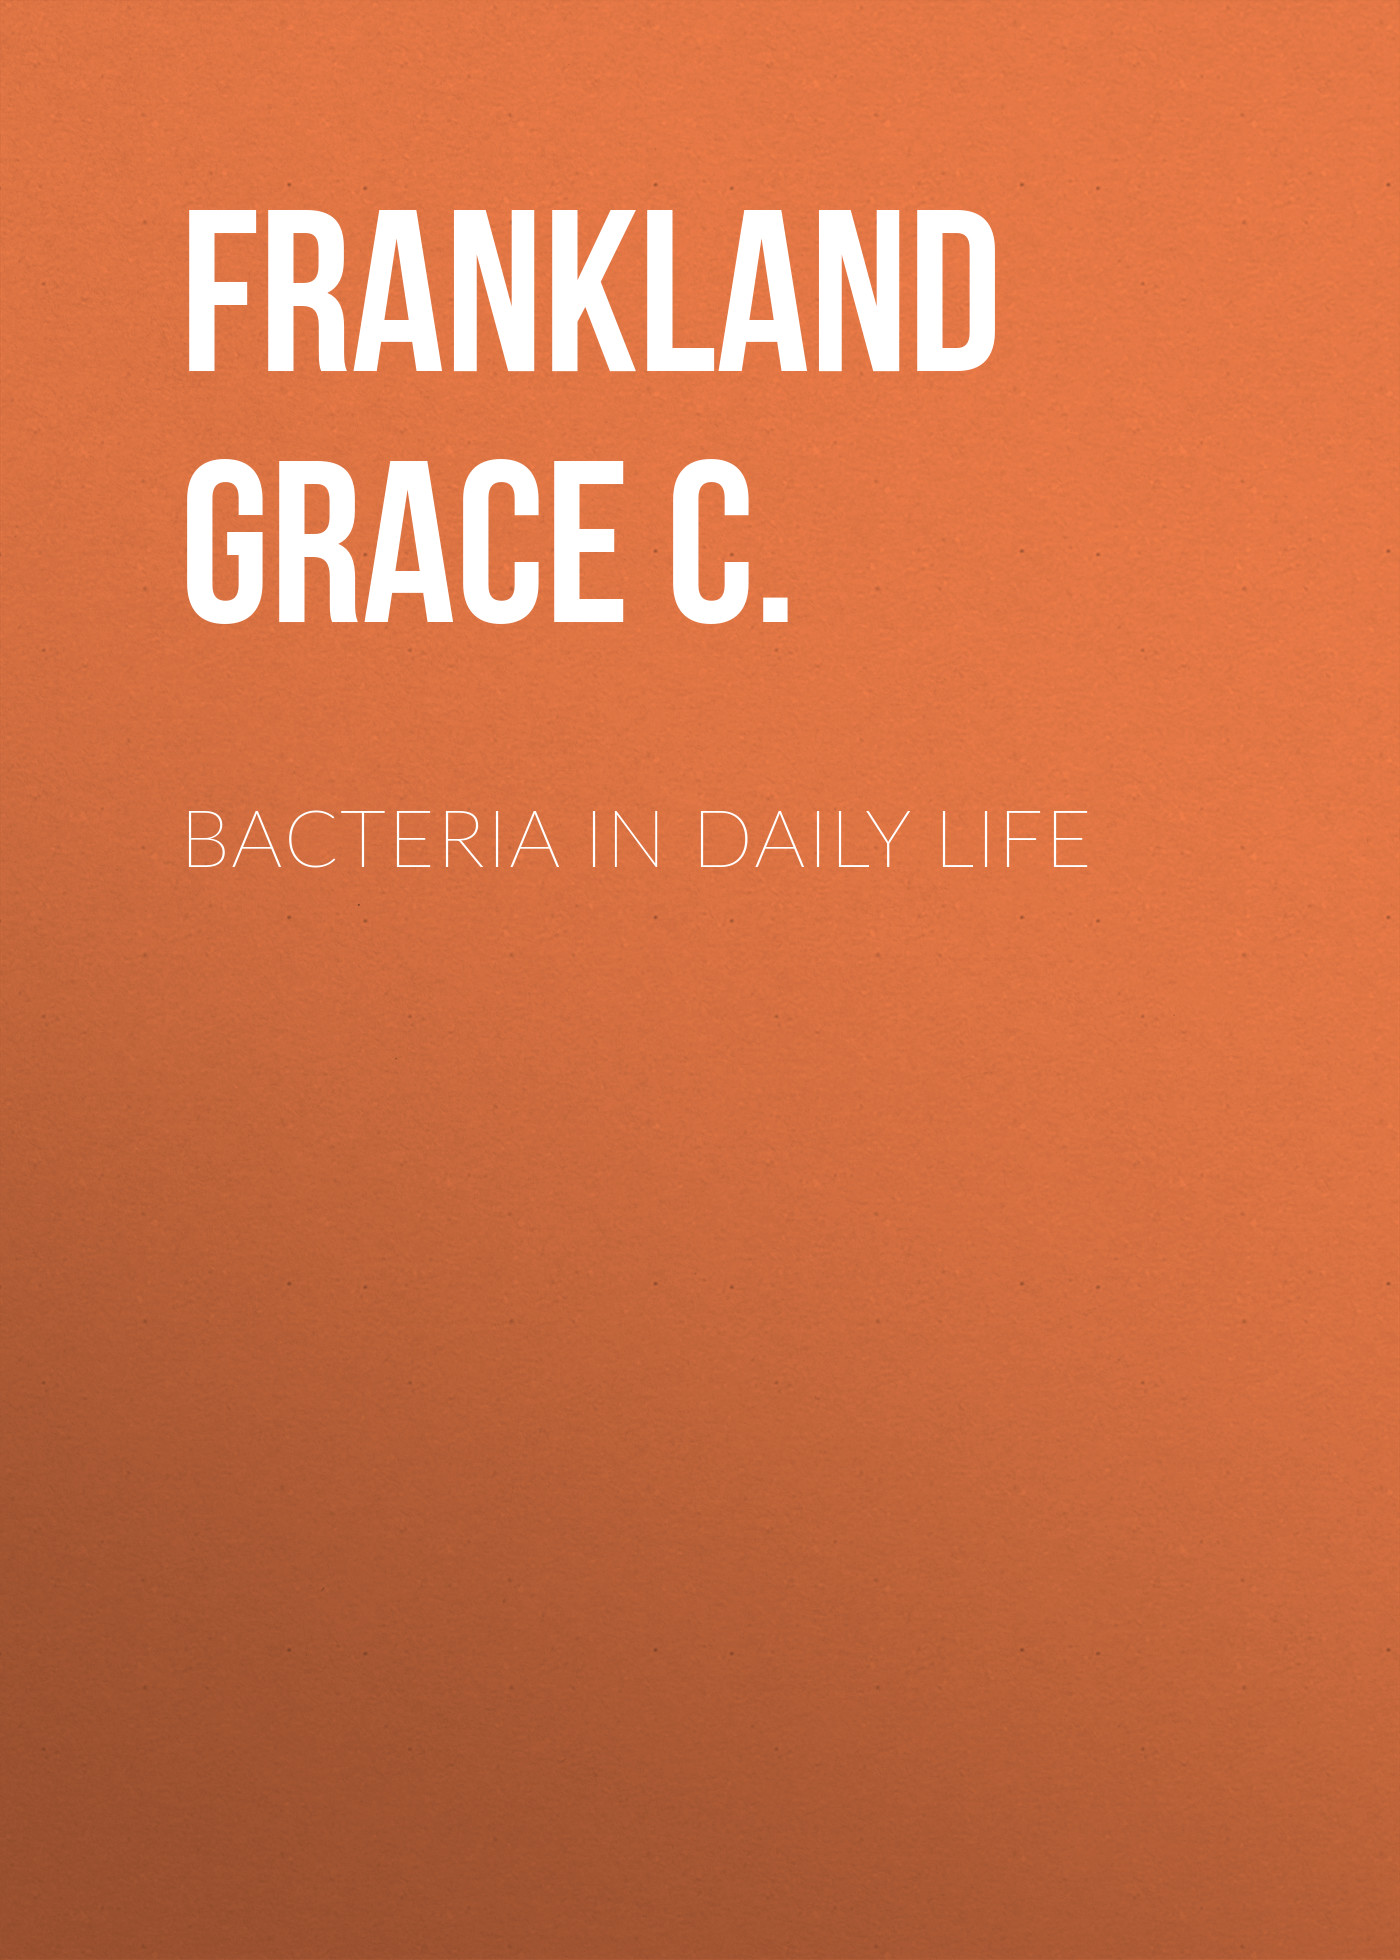 Книга Bacteria in Daily Life из серии , созданная Grace Frankland, может относится к жанру Медицина, Зарубежная старинная литература, Зарубежная классика. Стоимость электронной книги Bacteria in Daily Life с идентификатором 24859043 составляет 0 руб.